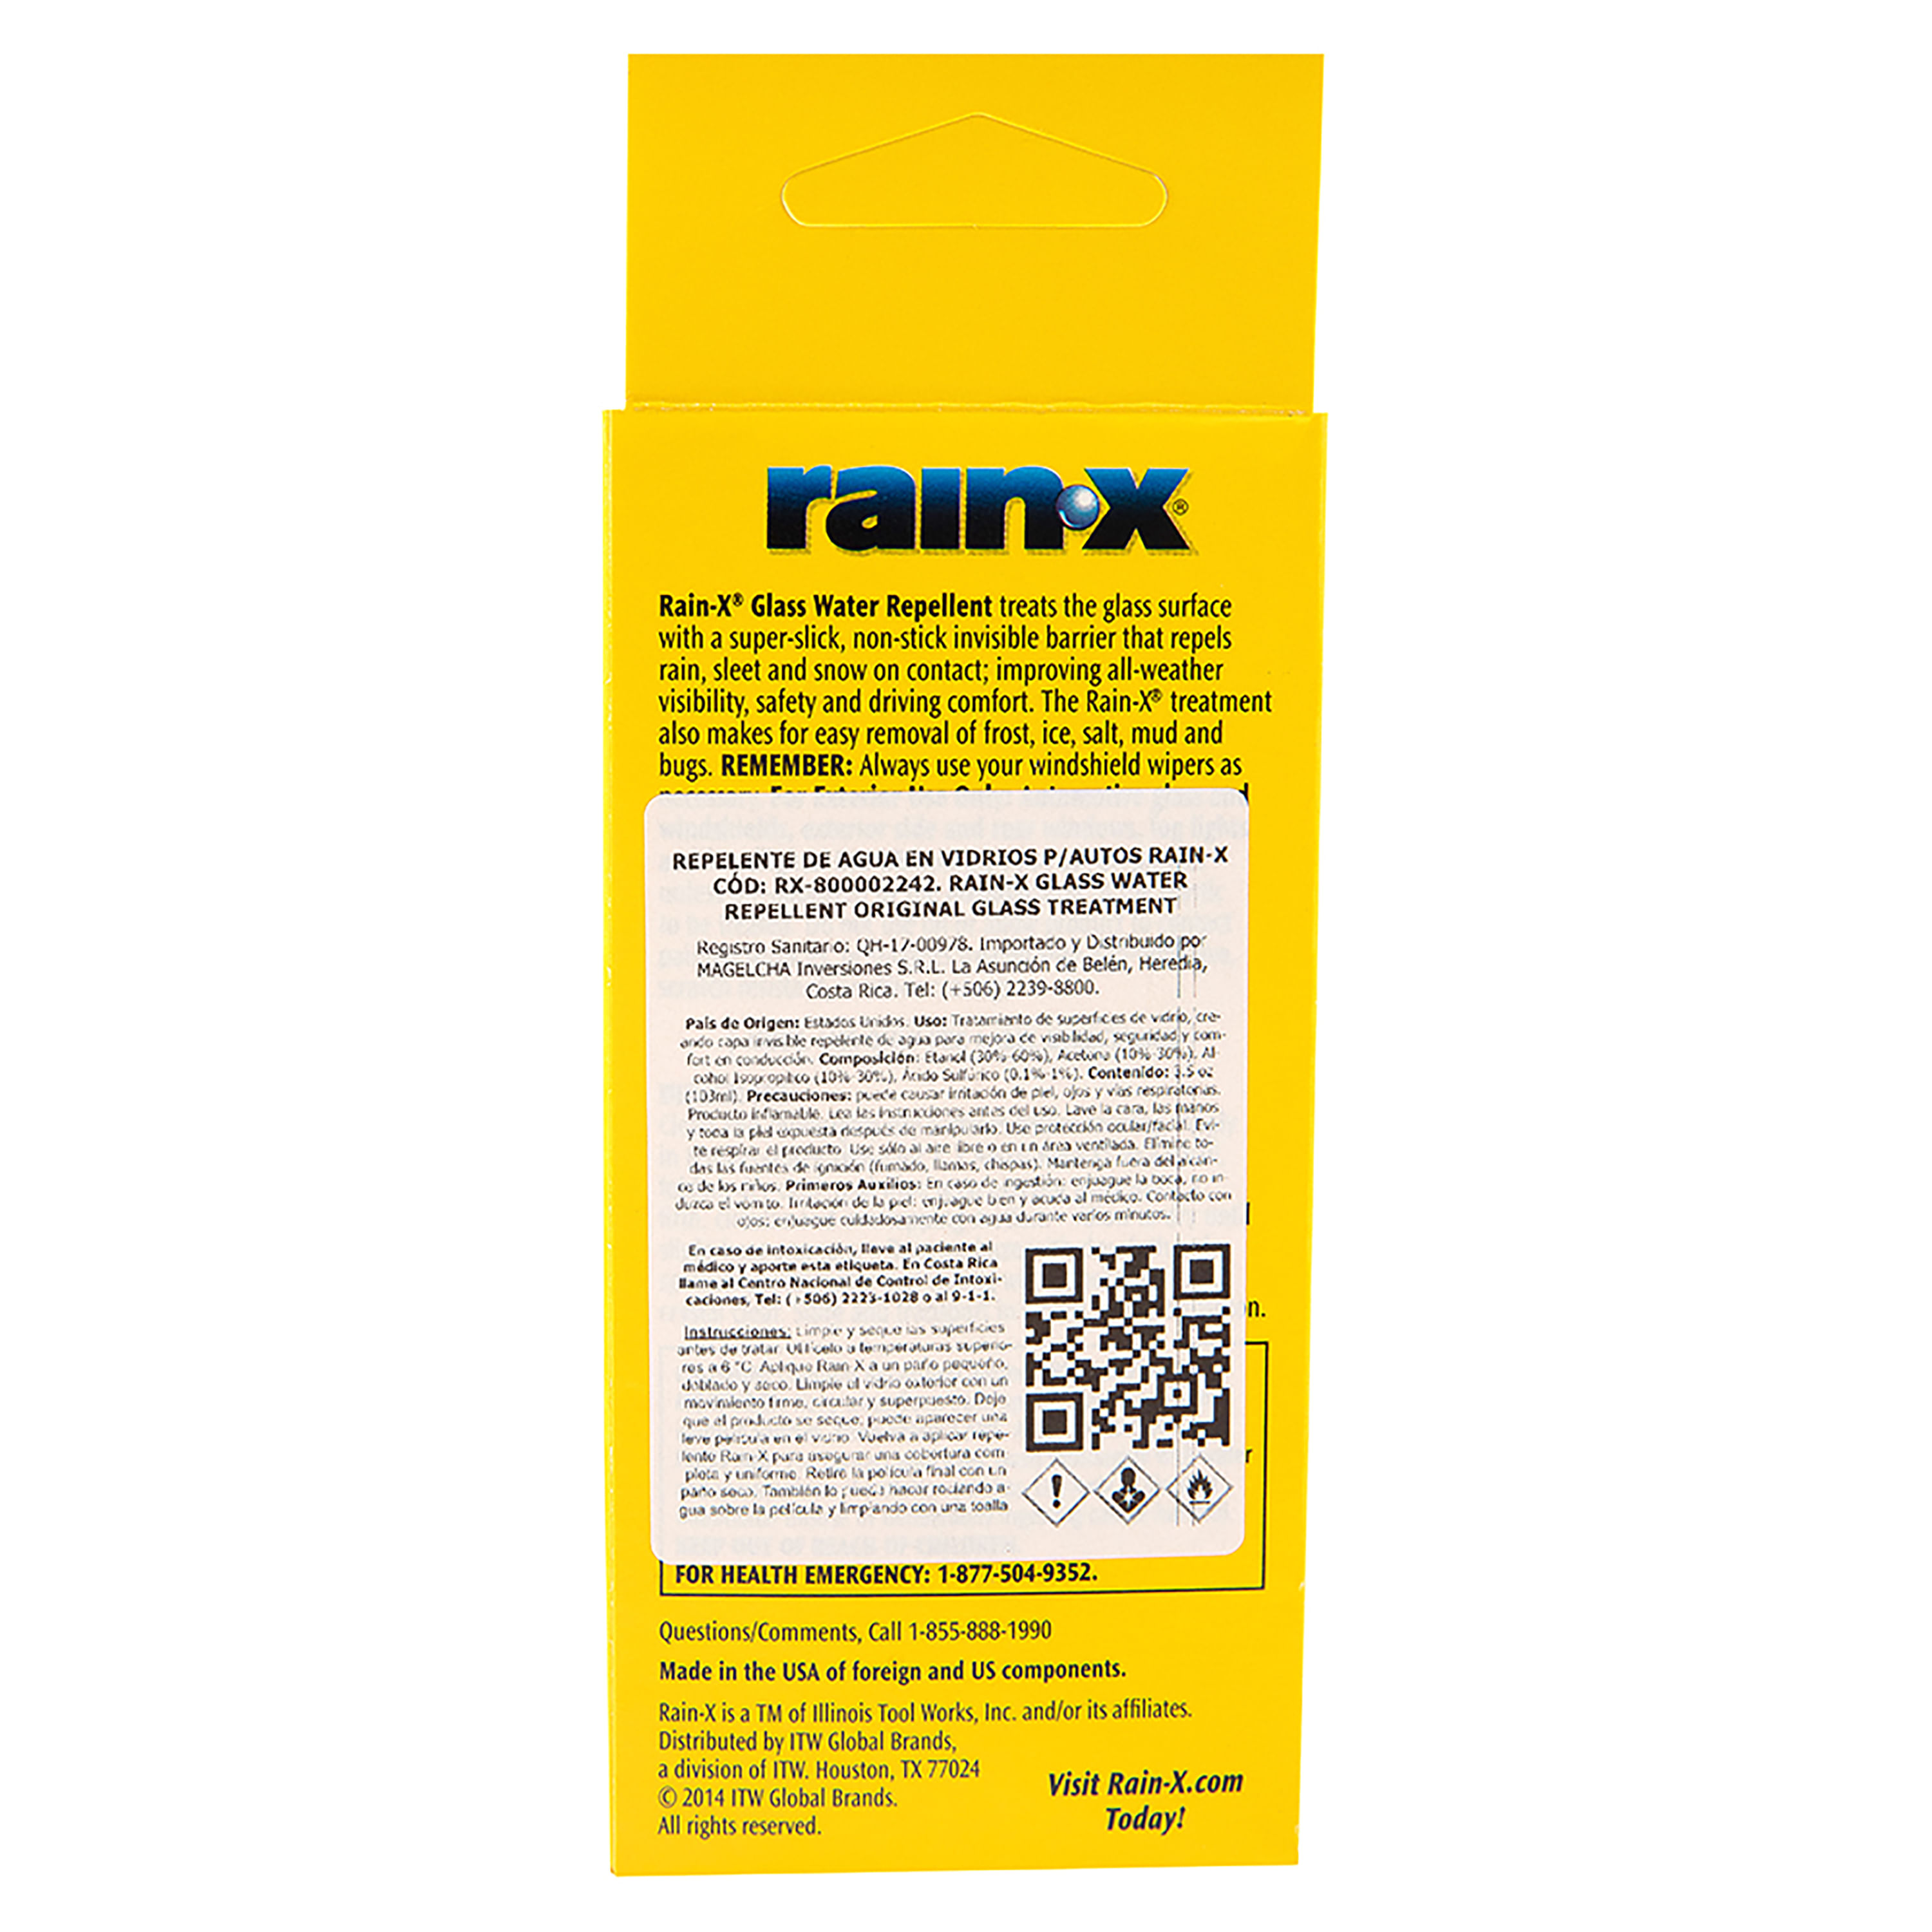 Comprar Repelente Rainx Original De Agua para Vidrios de Autos- 103ml